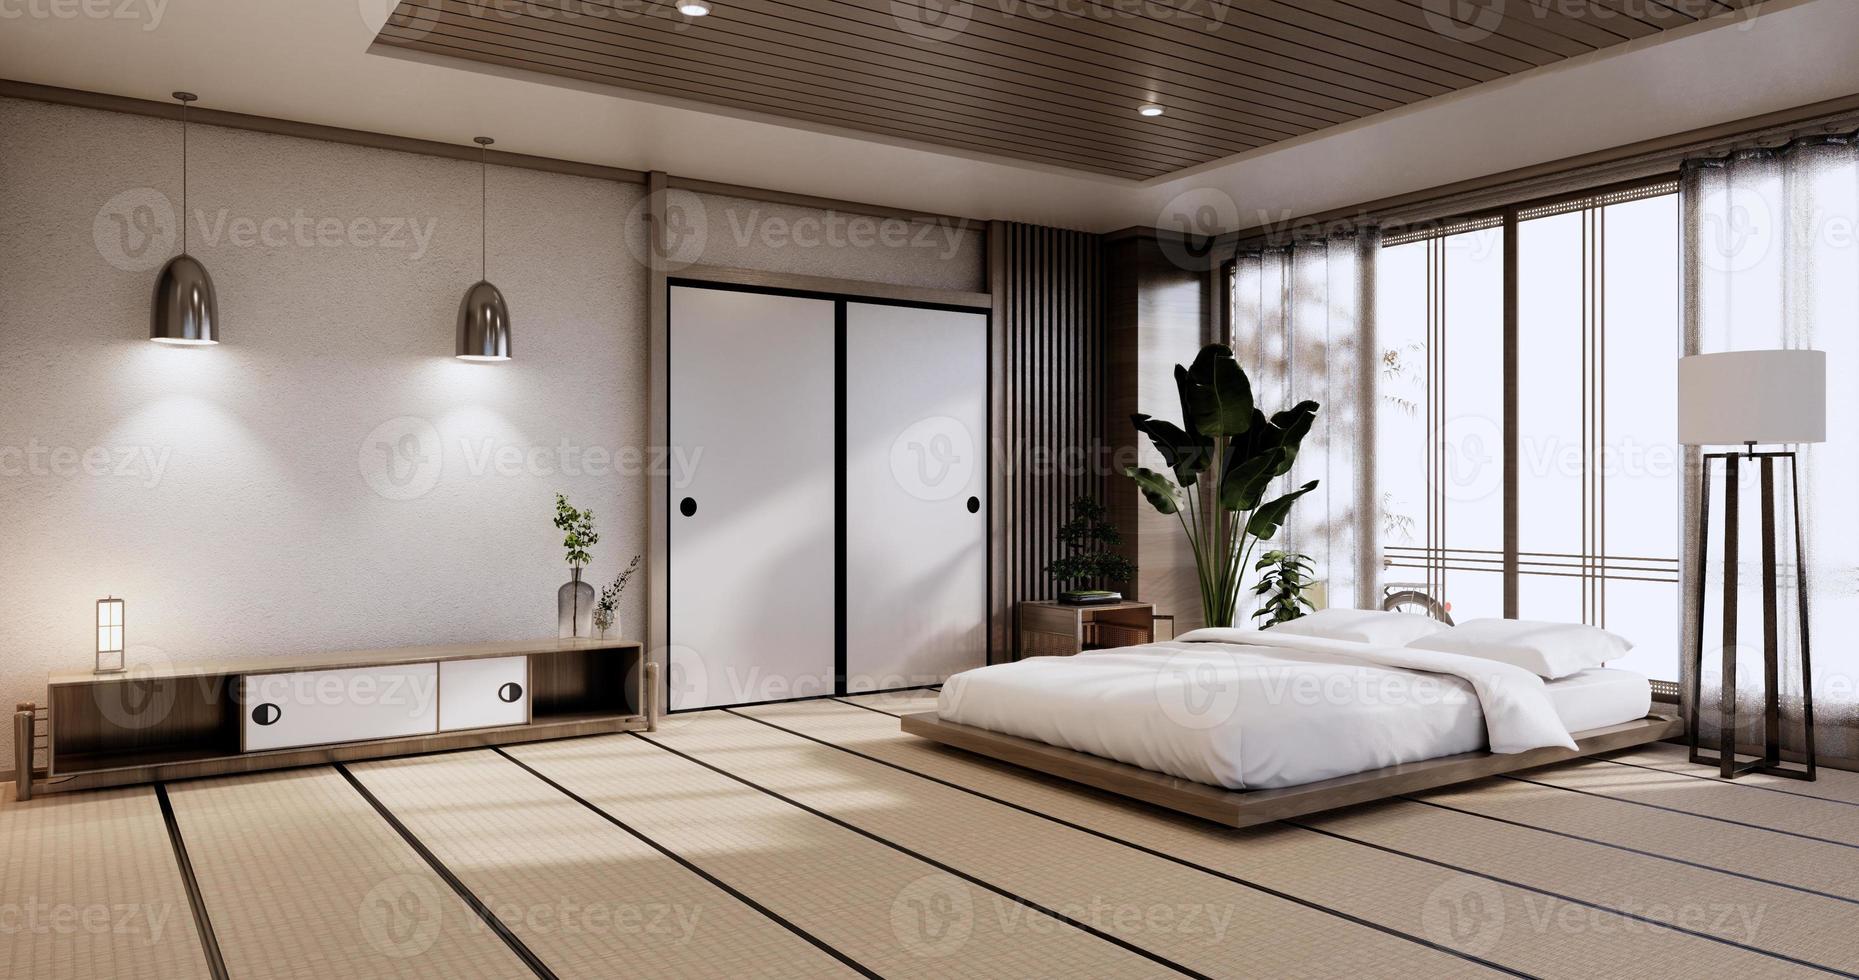 Innenmodell mit Zen-Bettanlage und Dekoartion im japanischen Schlafzimmer. 3D-Rendering. foto